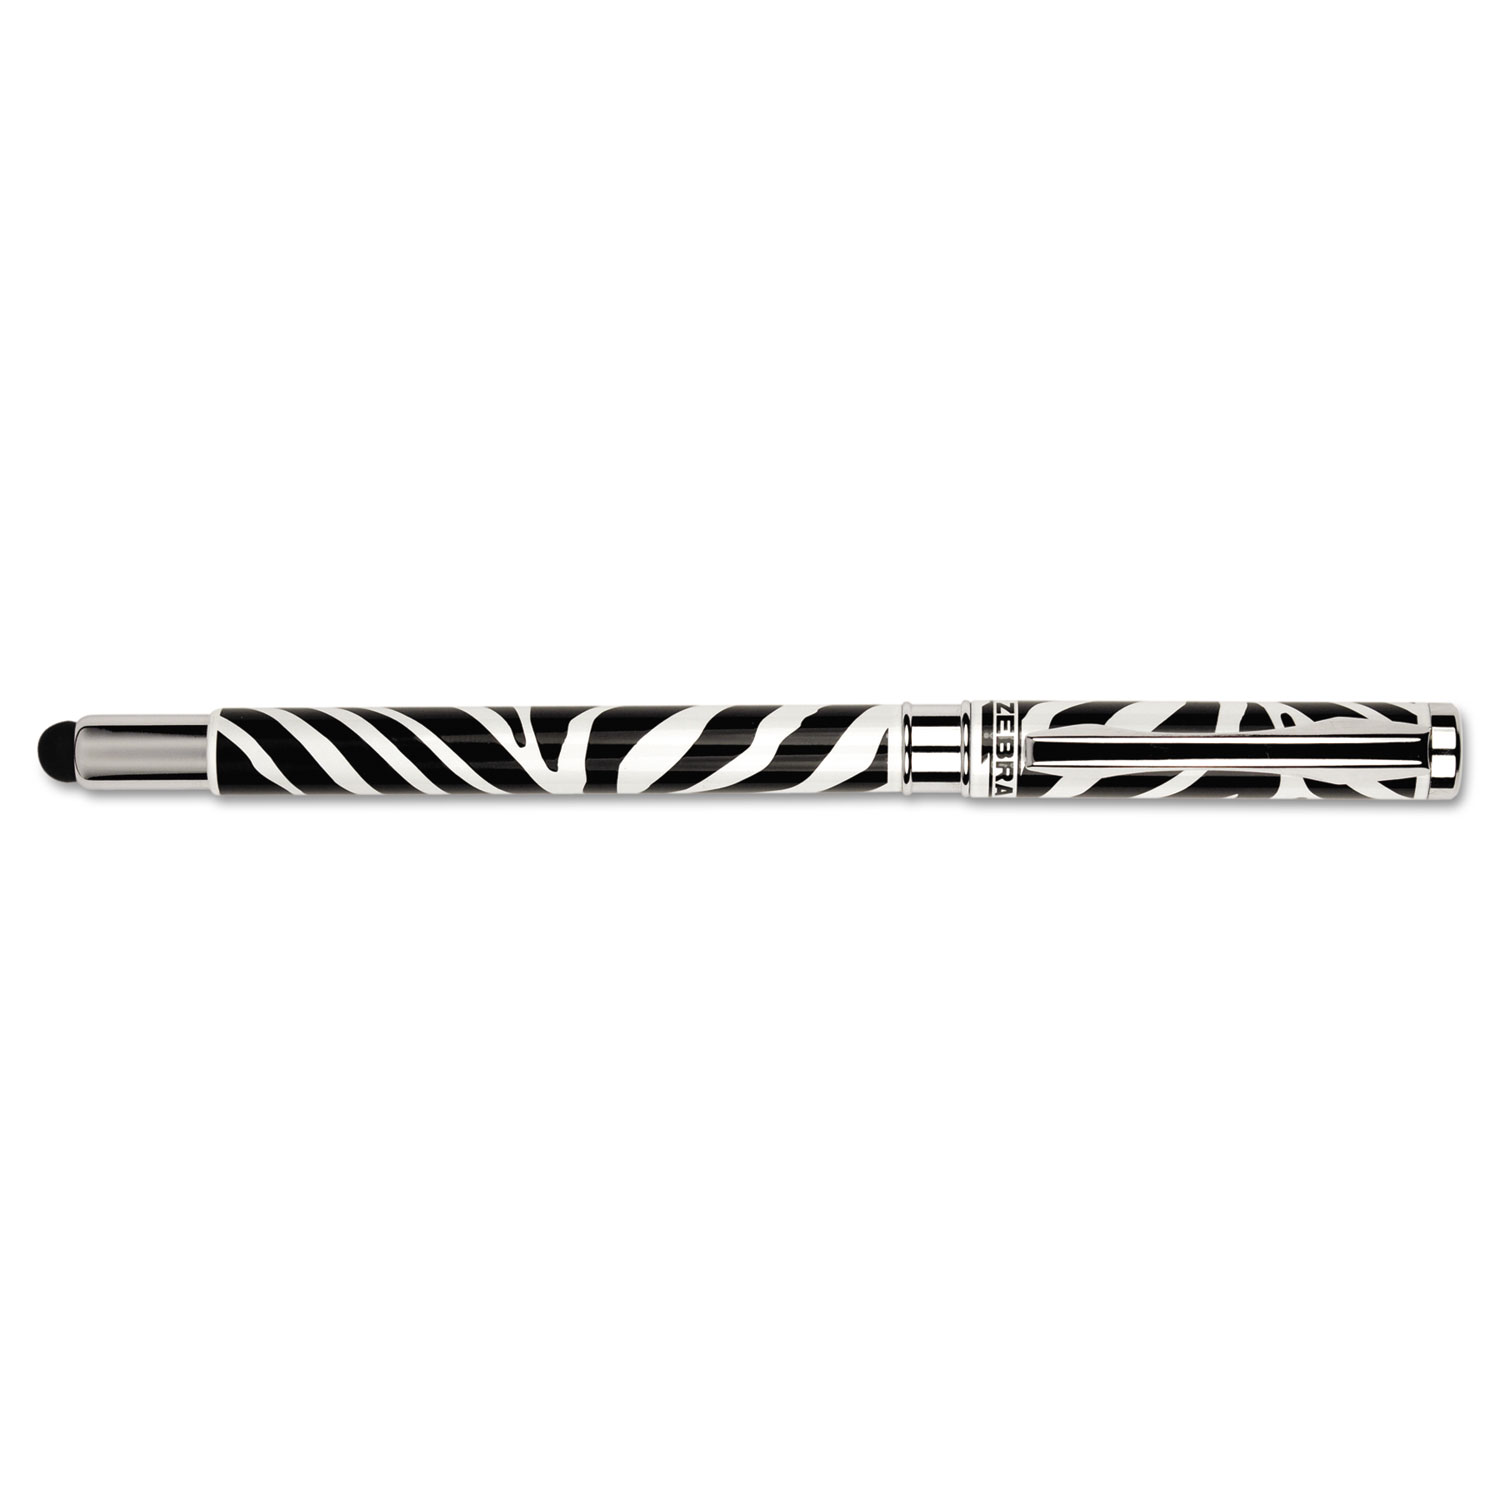 StylusPen Capped Ballpoint Pen/Stylus, Zebra Print